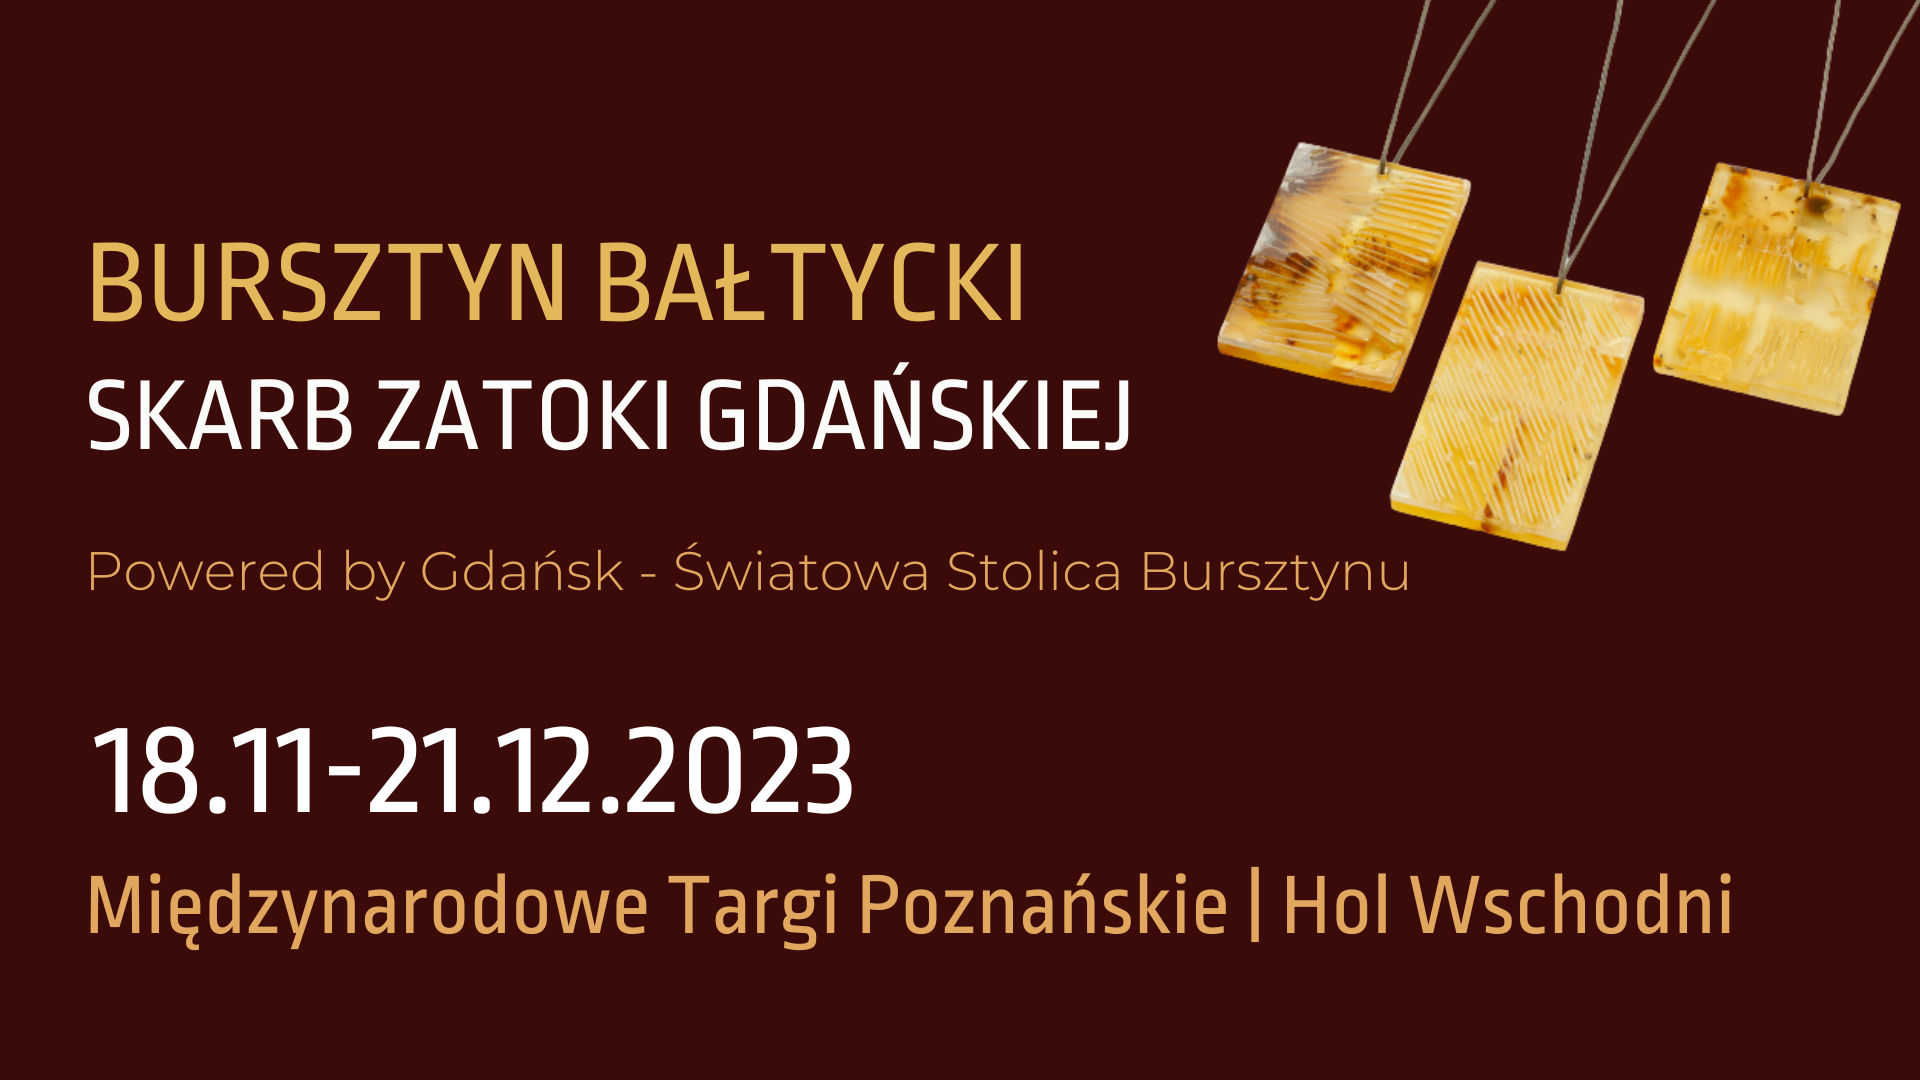 Od 18 listopada będzie można podziwiać na terenach Międzynarodowych Targów Poznańskich wystawę „Bursztyn bałtycki. Skarb Zatoki Gdańskiej” oraz wziąć udział w warsztatach bursztynniczych.